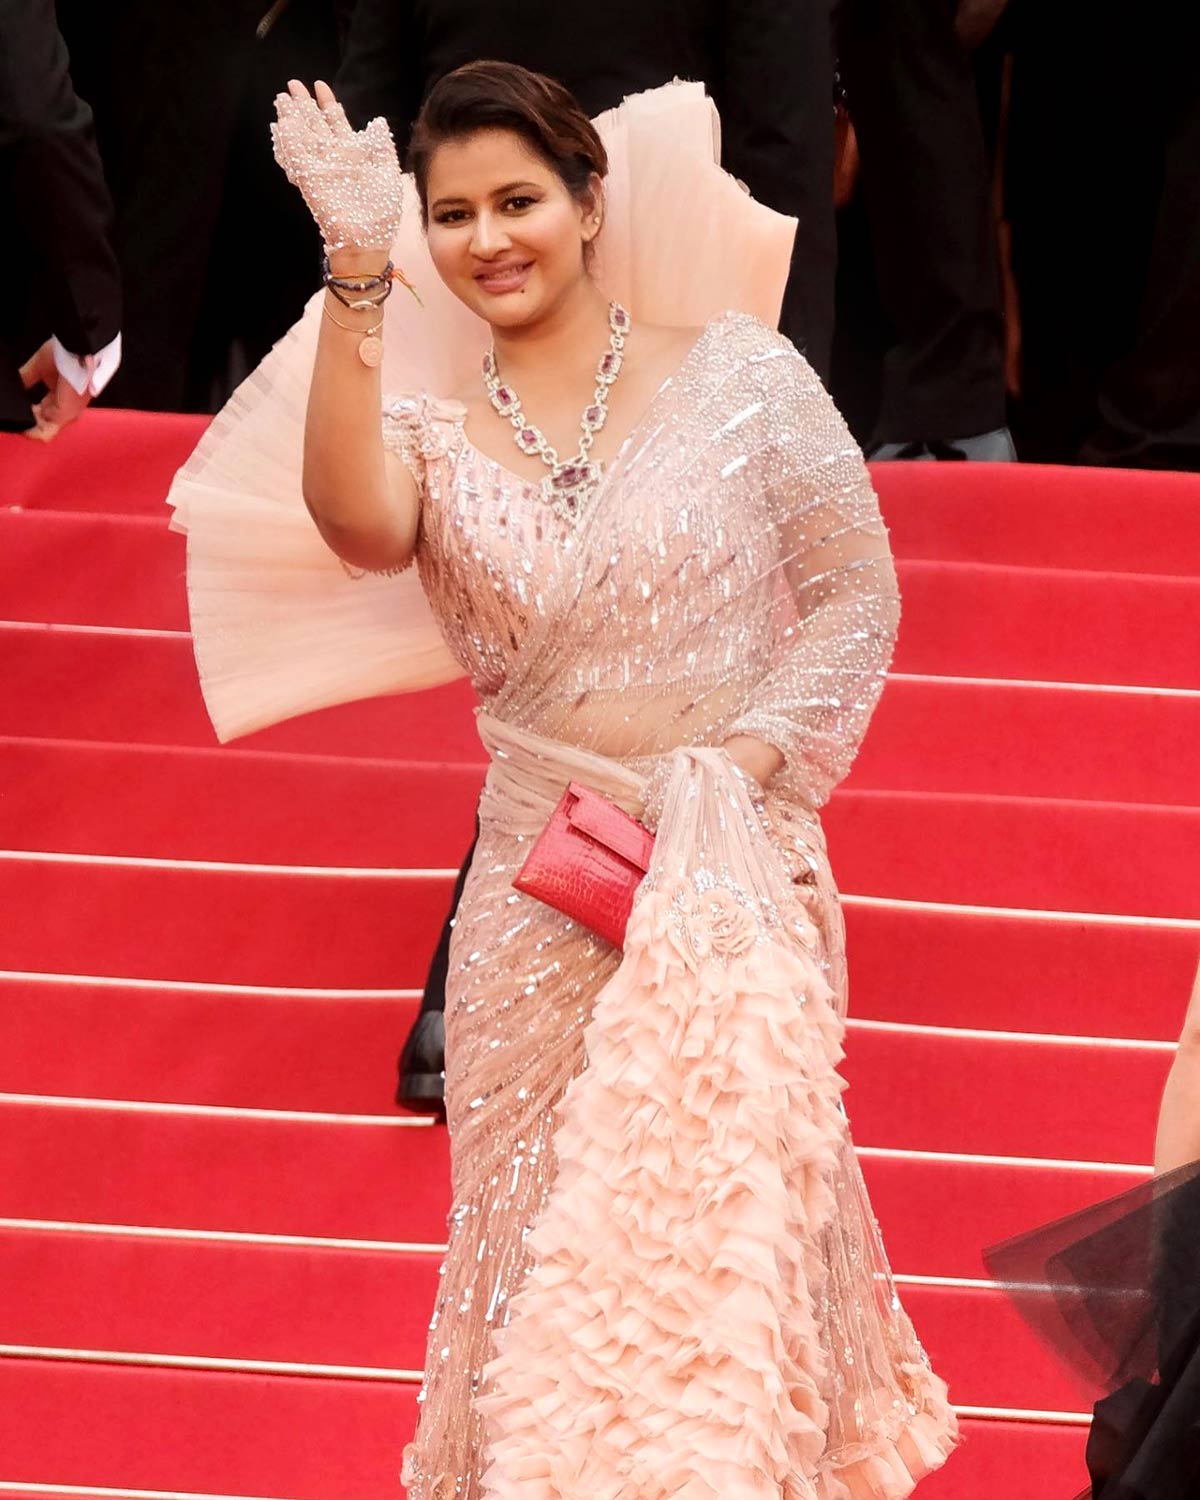 At Last! A Sari At Cannes!